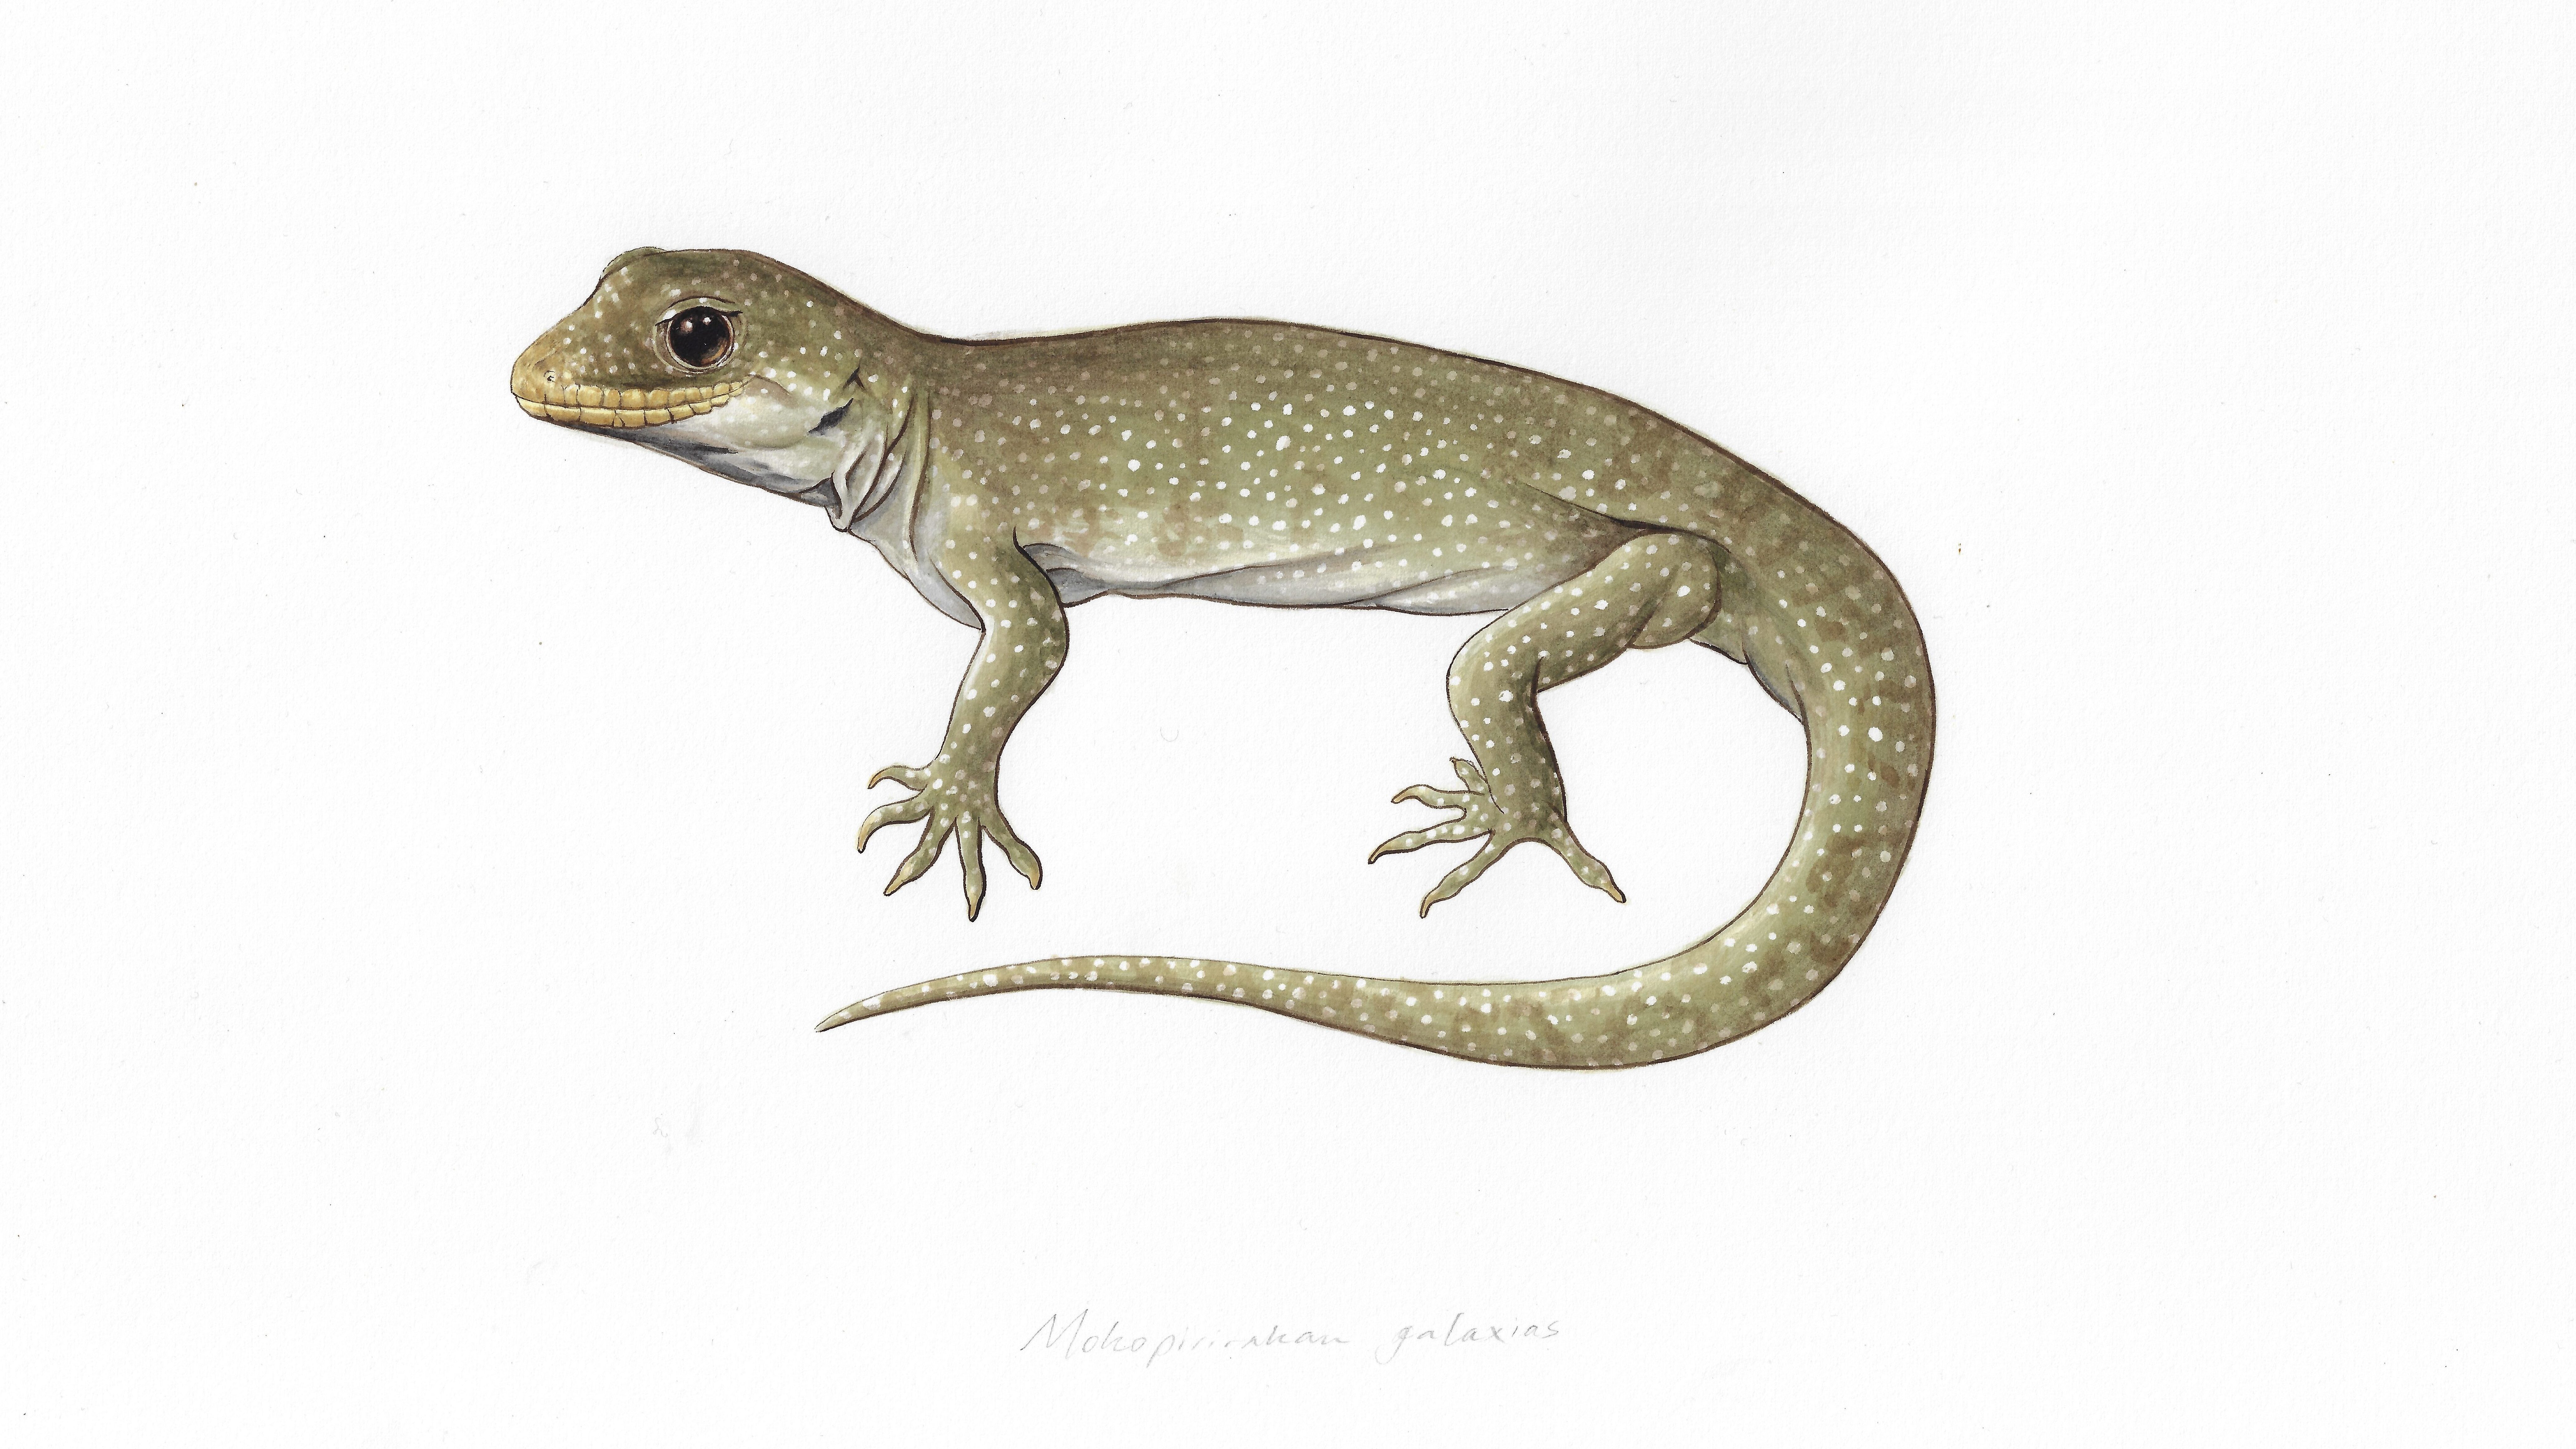 A painting of the hura te ao gecko